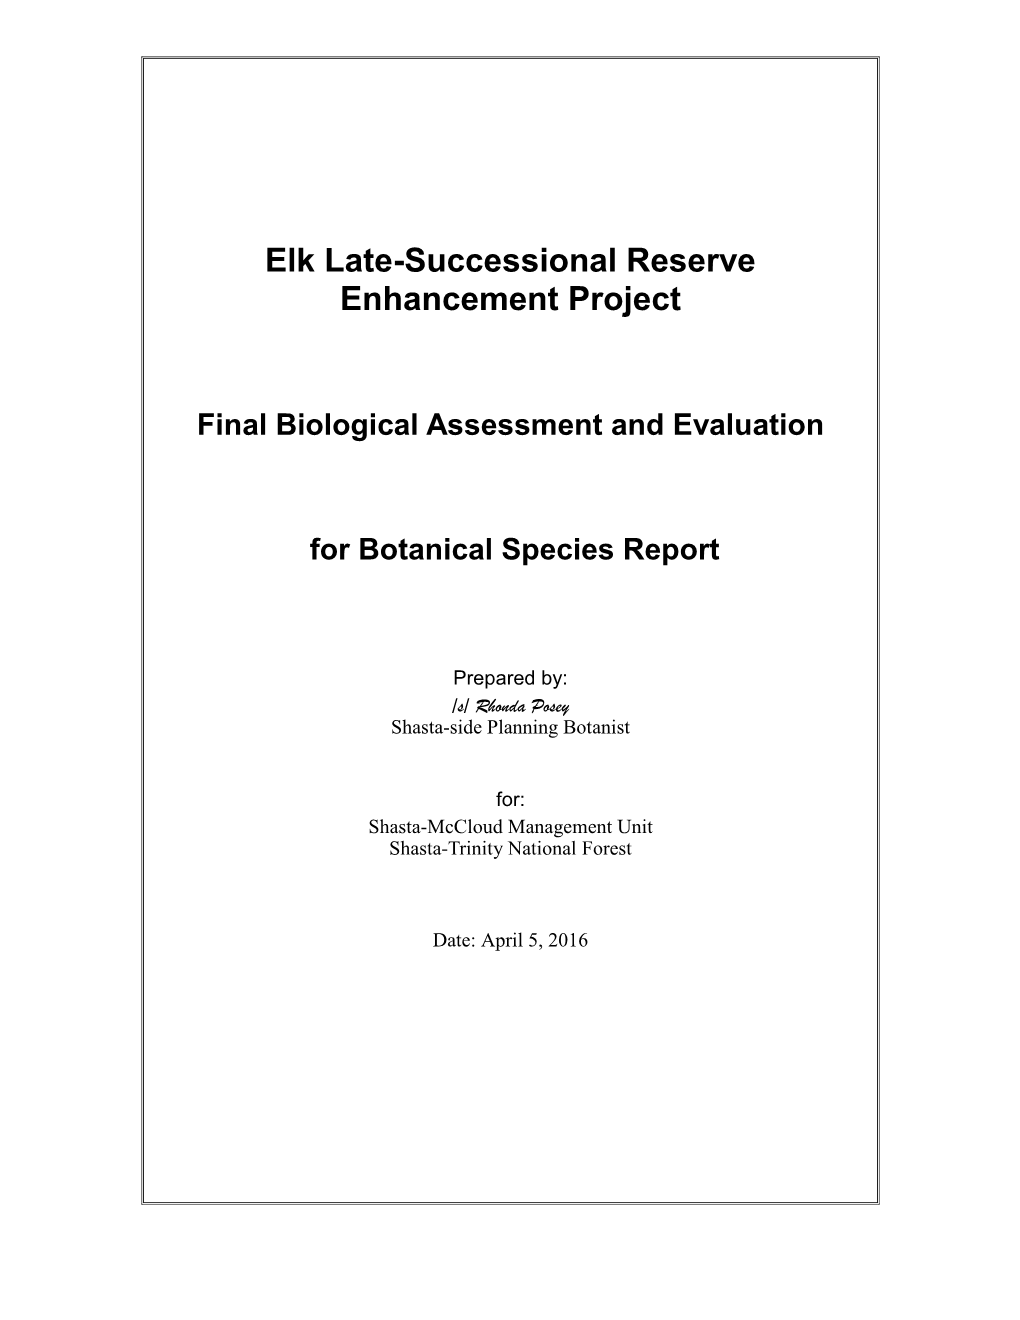 Elk Late-Successional Reserve Enhancement Project